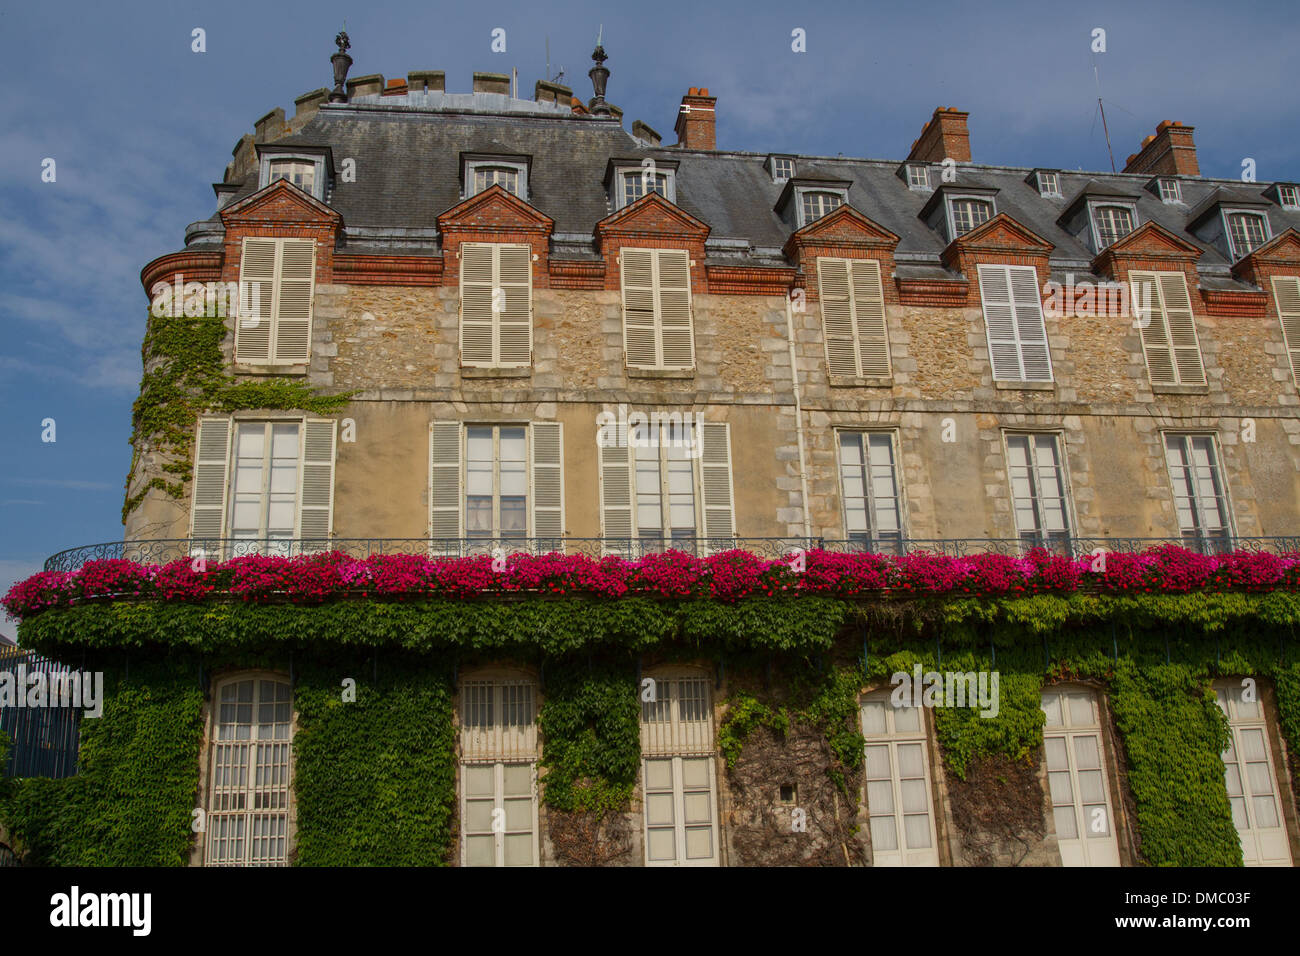 CHATEAU DE RAMBOUILLET, ex residenza reale, oggi proprietà dello Stato francese e la residenza presidenziale, Rambouillet, yvelines (78), Ile-de-France, Francia Foto Stock